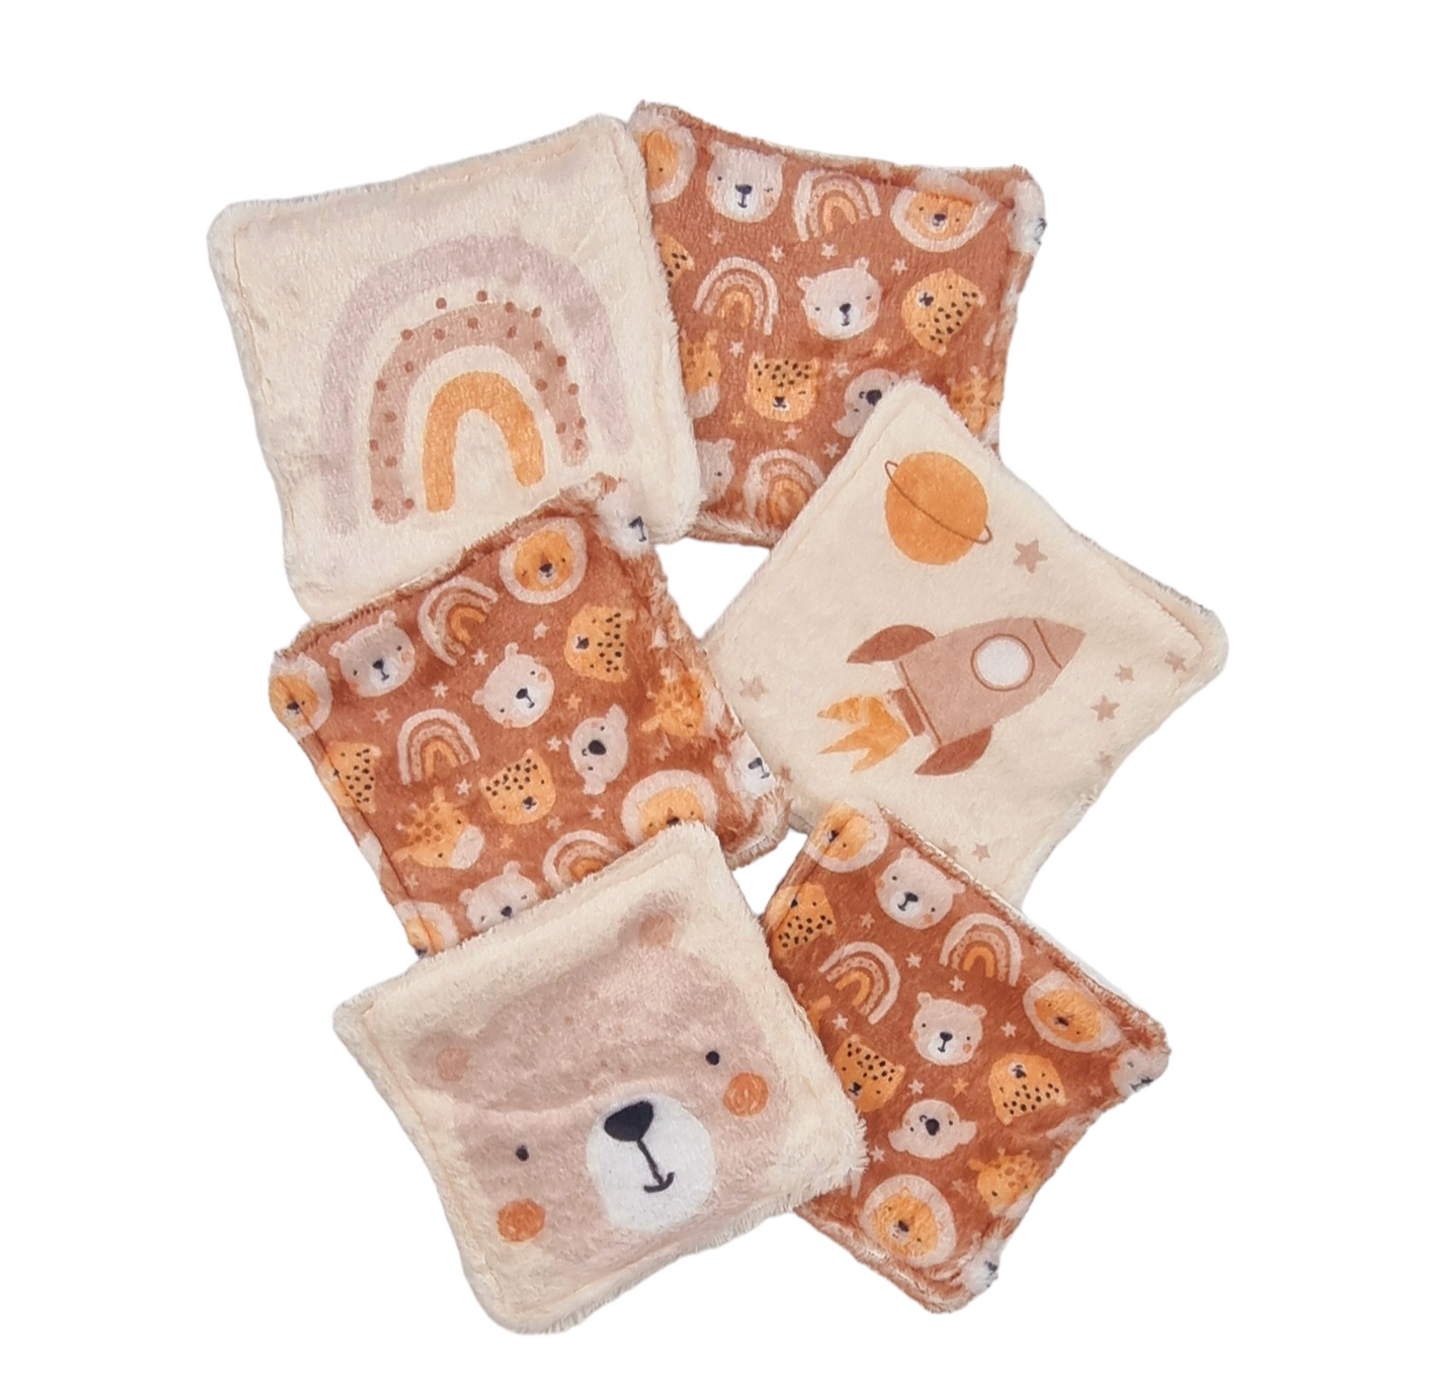 Baby washcloths - Teddy bear